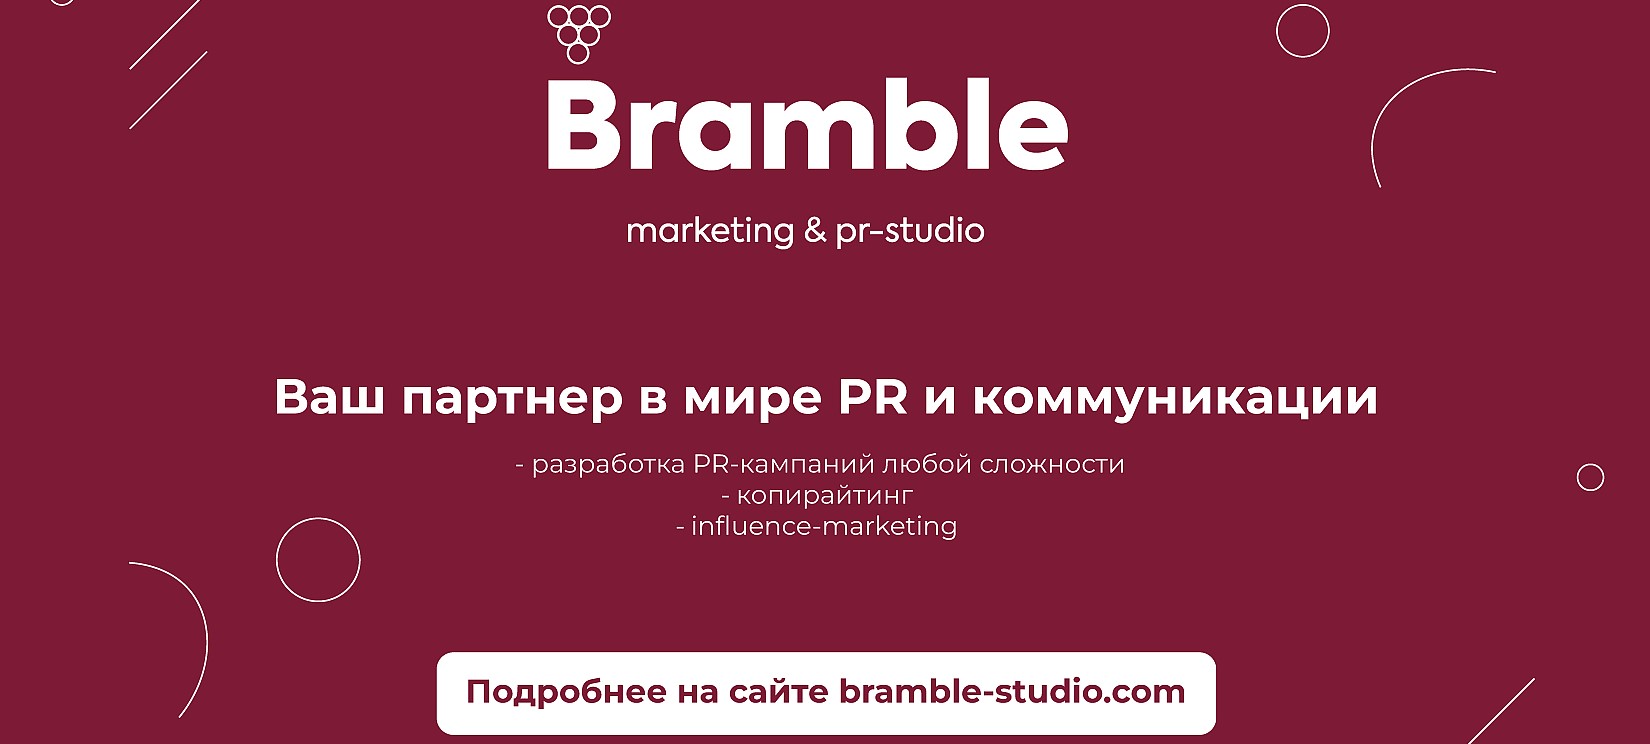 Bramble - партнер выставки-презентации Содружества